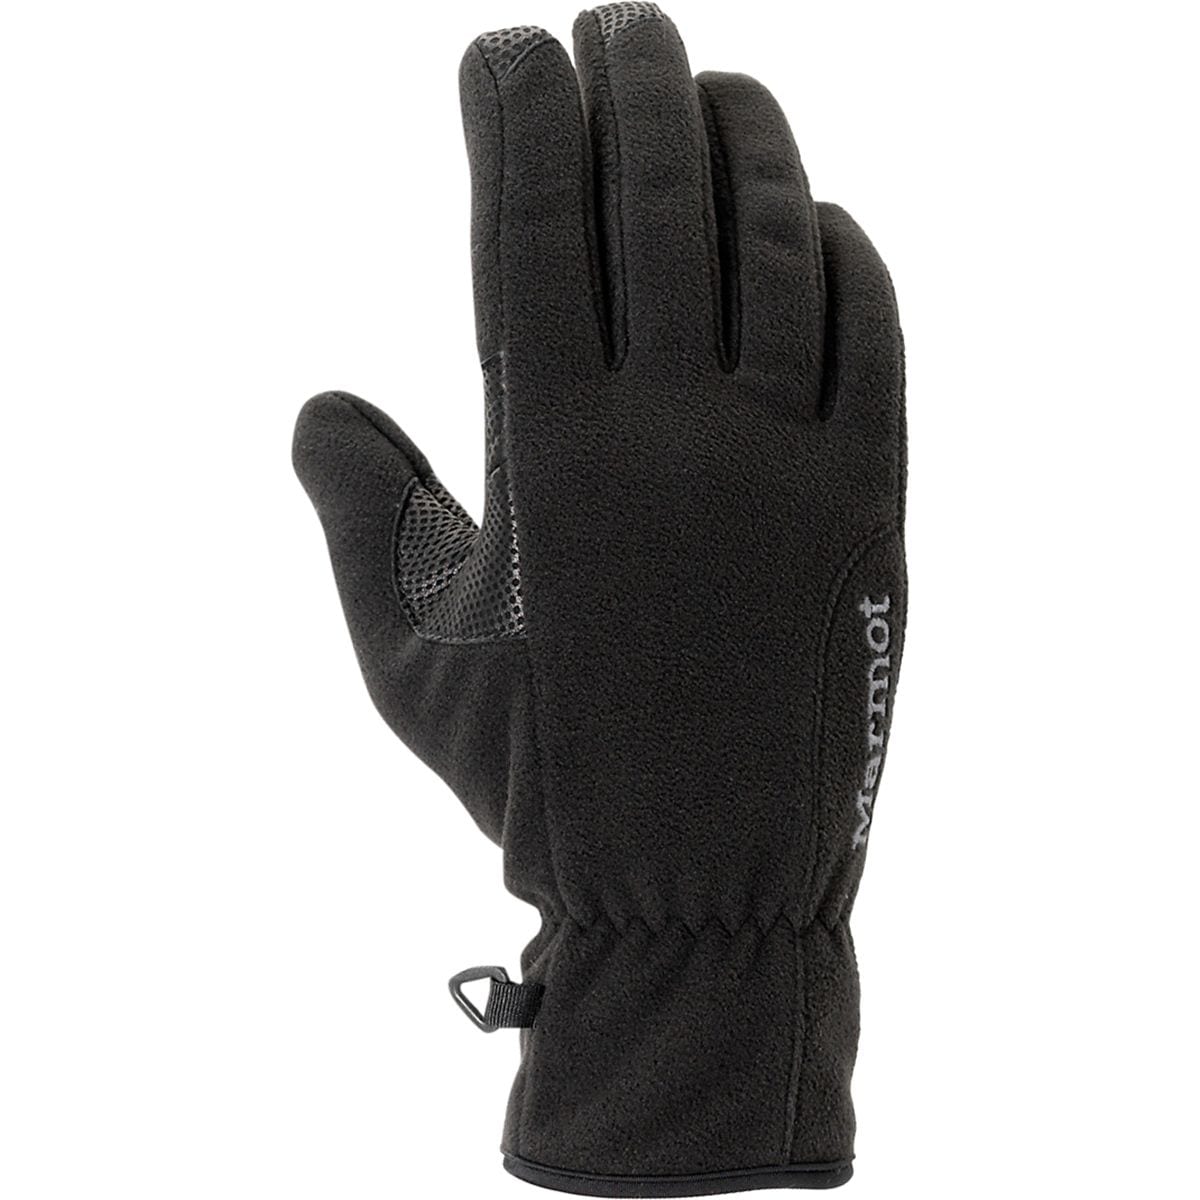 Marmot Windstopper Gloves - Women's | Backcountry.com